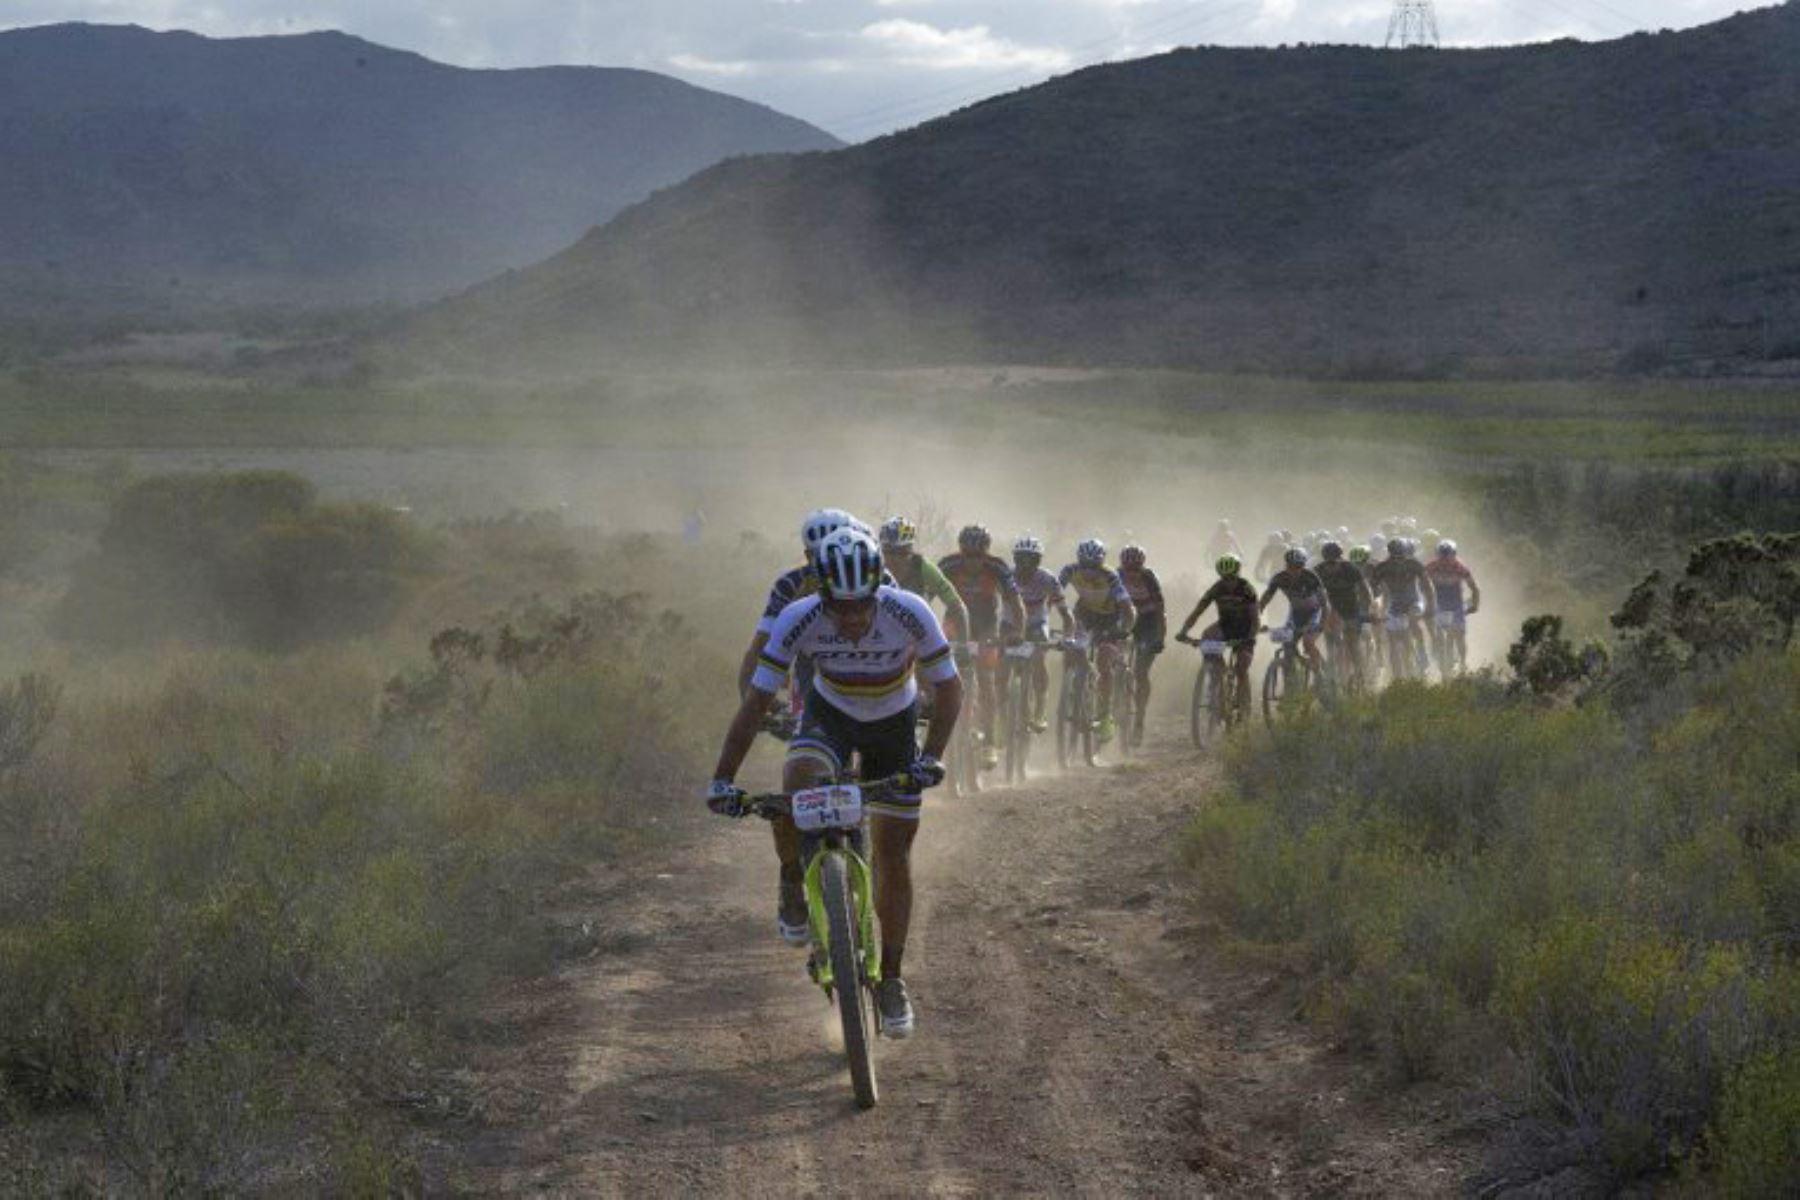 Los participantes cabalgan durante la carrera africana de mountain bike Cape Epic , en la región montañosa de la ciudad de Robertson.Foto.AFP